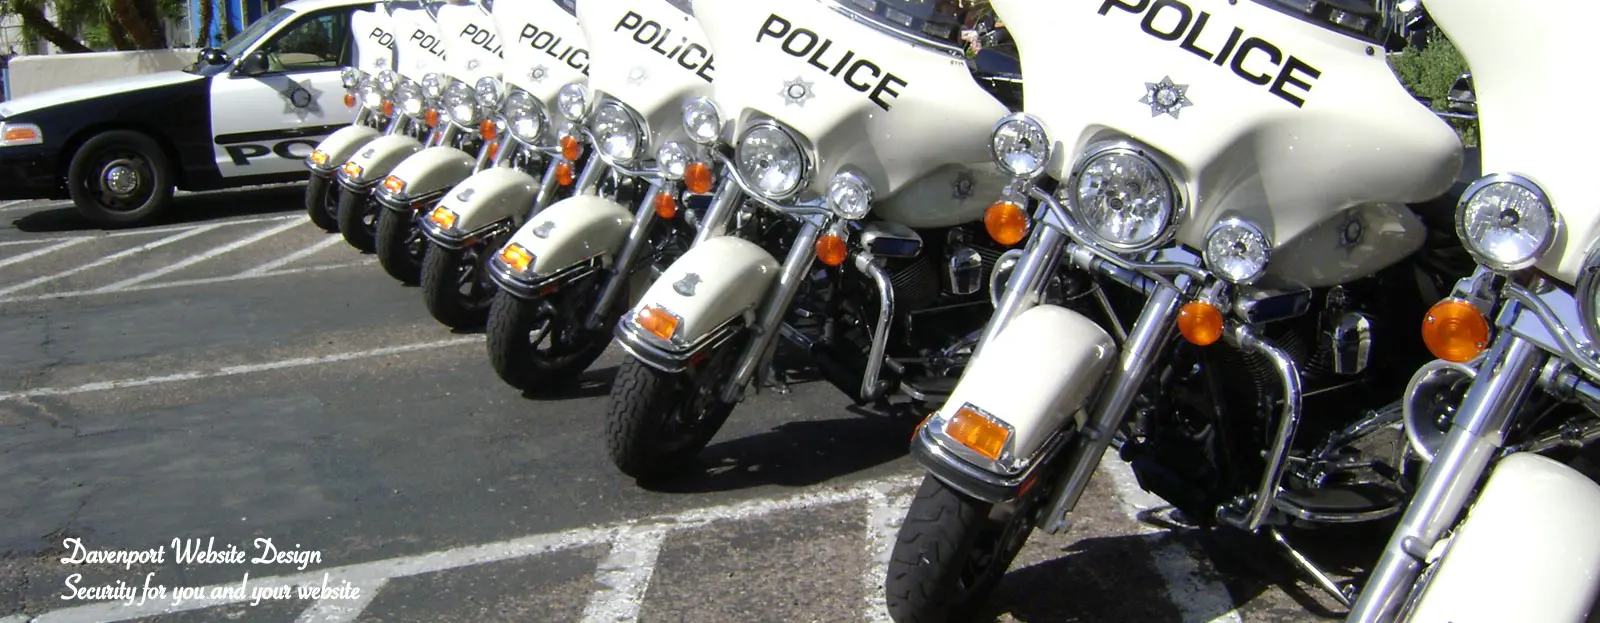 Row of Police Motorcycles at a Santa Cruz Car Show.